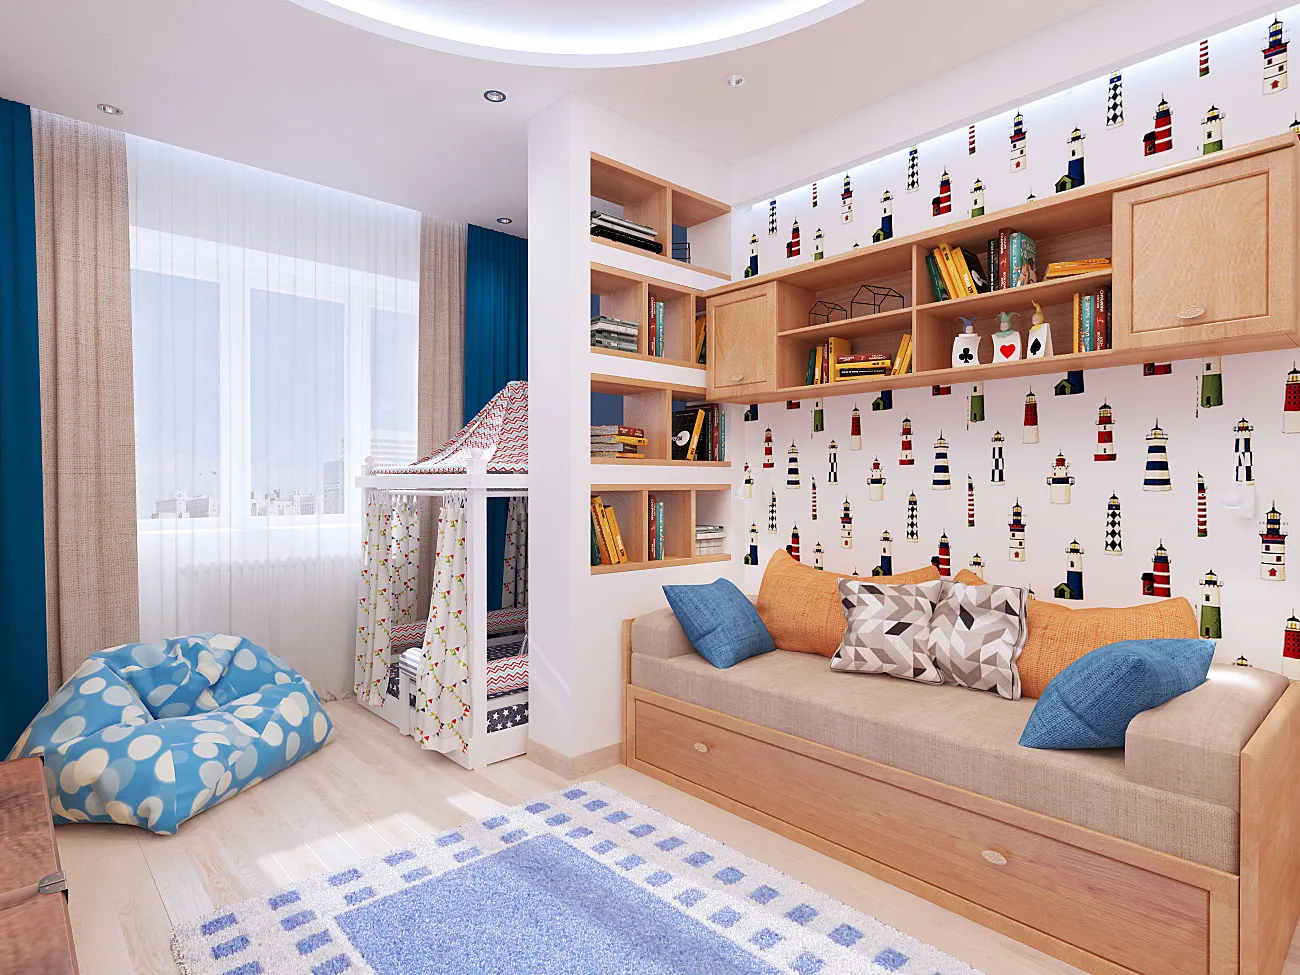 Детская комната 2023 – как обустроить красивый и модный интерьер для ребенка (фото)